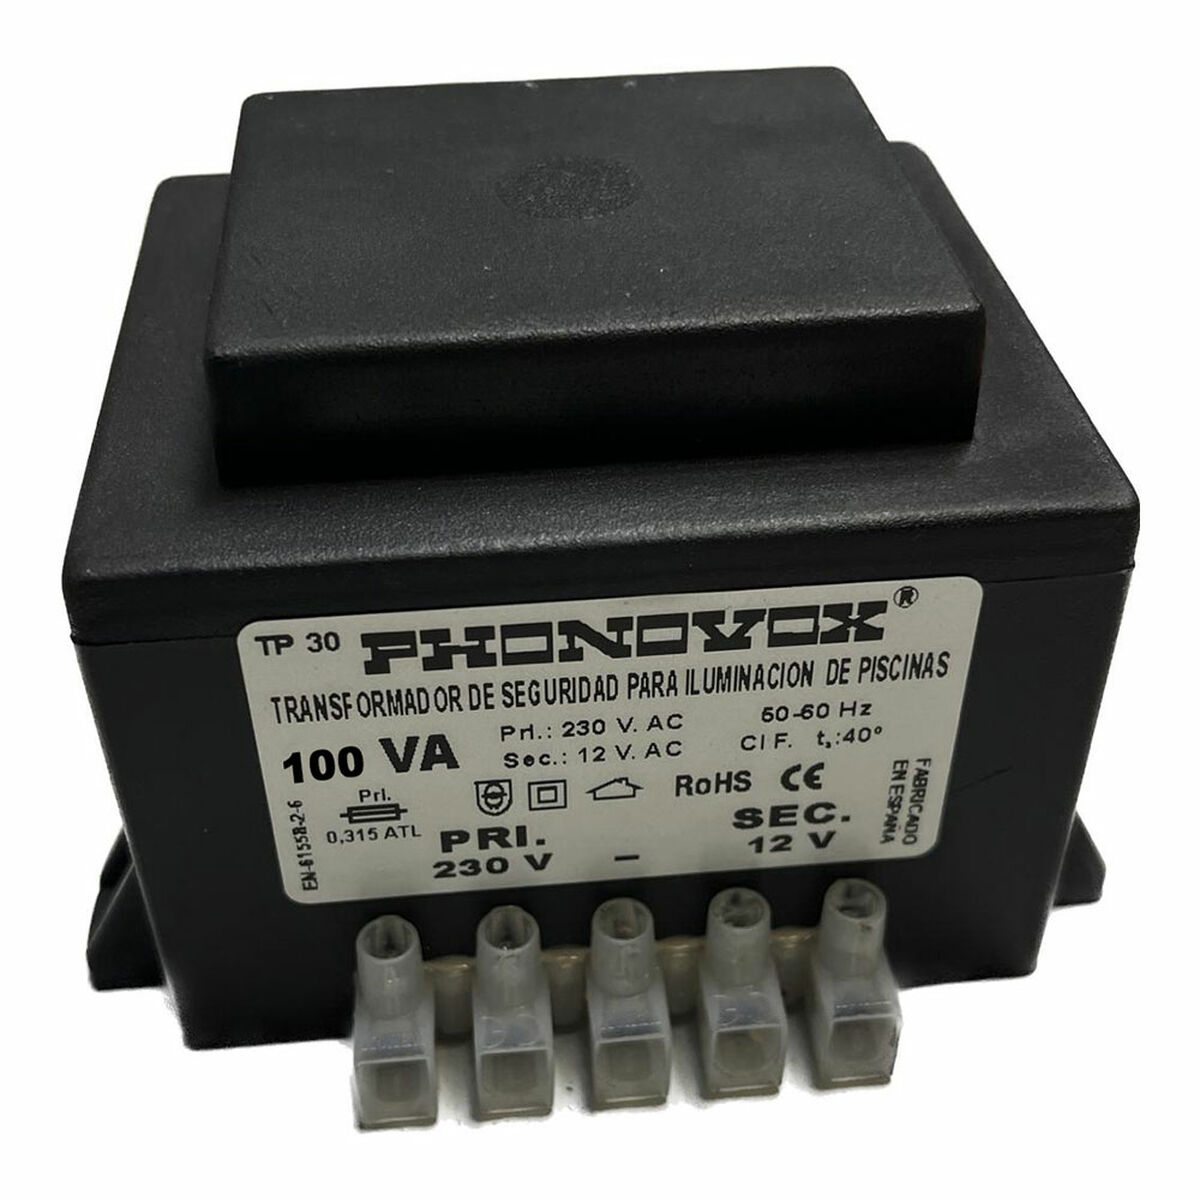 Transformateur de sécurité pour l'éclairage des piscines PHONOVOX tp31100 100 VA 12 V 230 V 50-60 Hz 9,8 x 7,9 x 7,4 cm